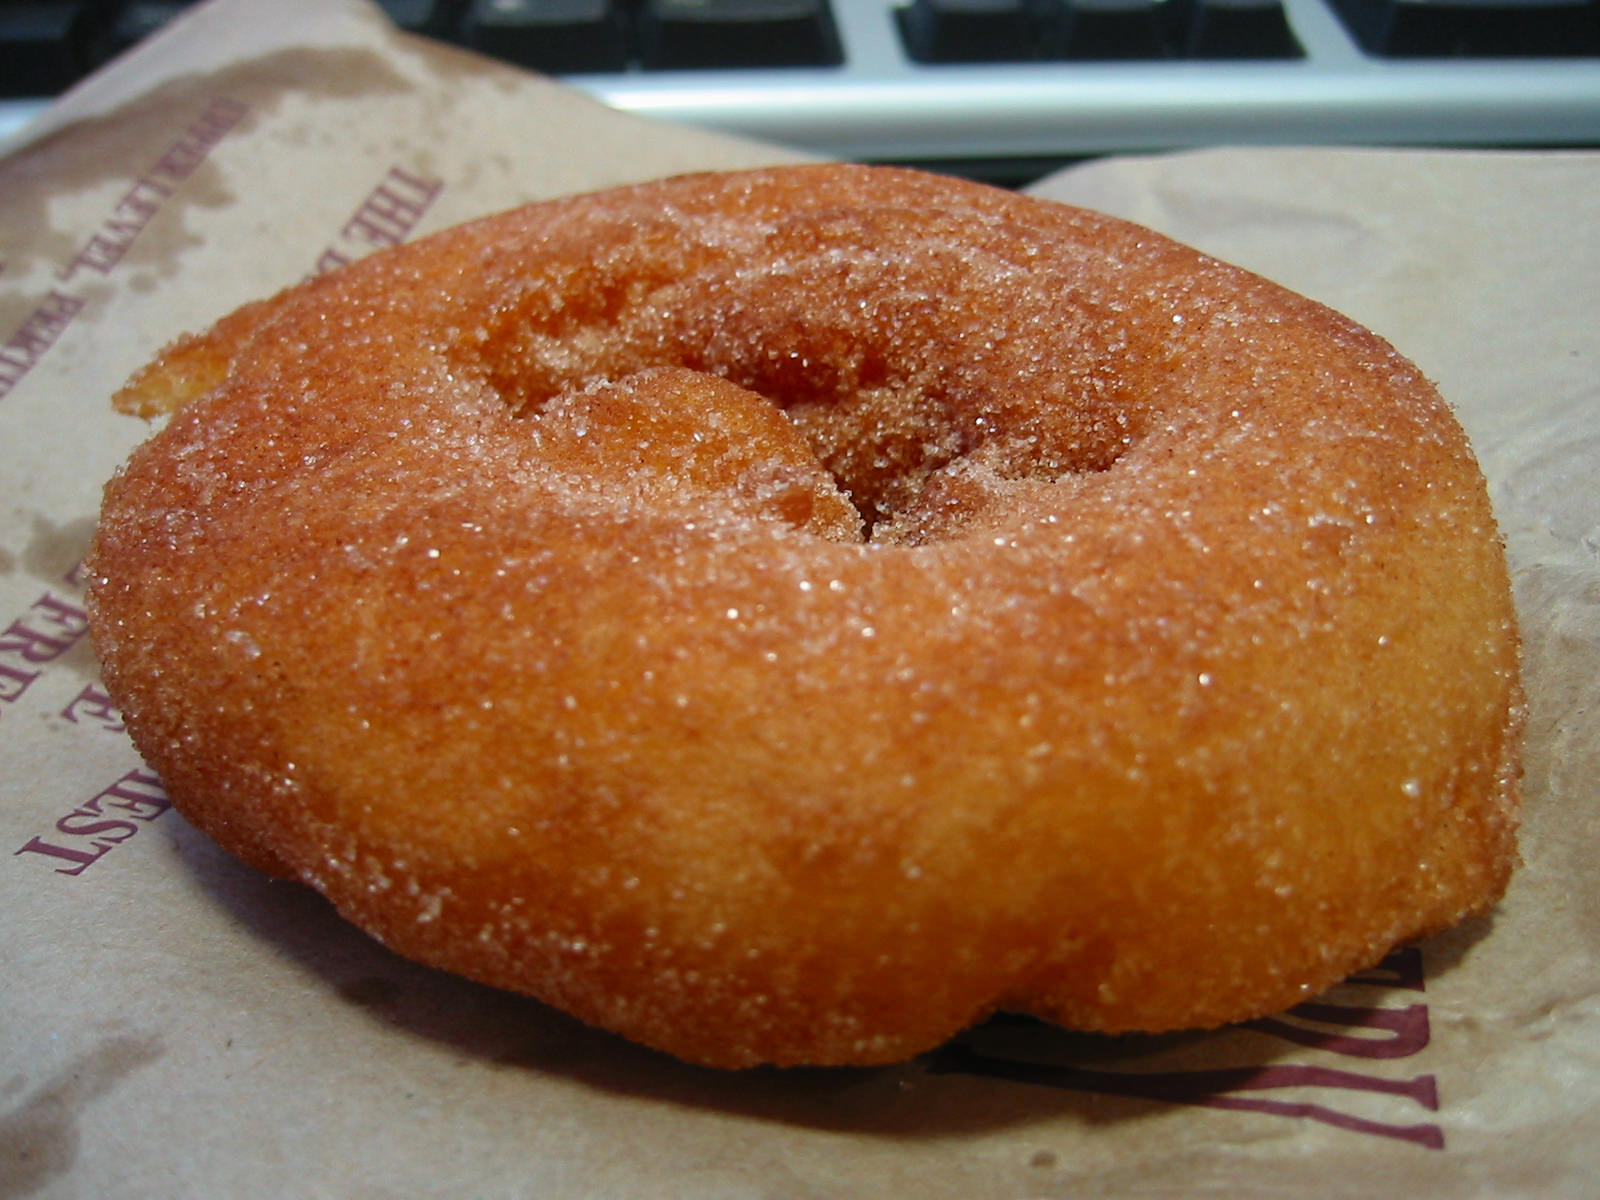 Cinnamon donut